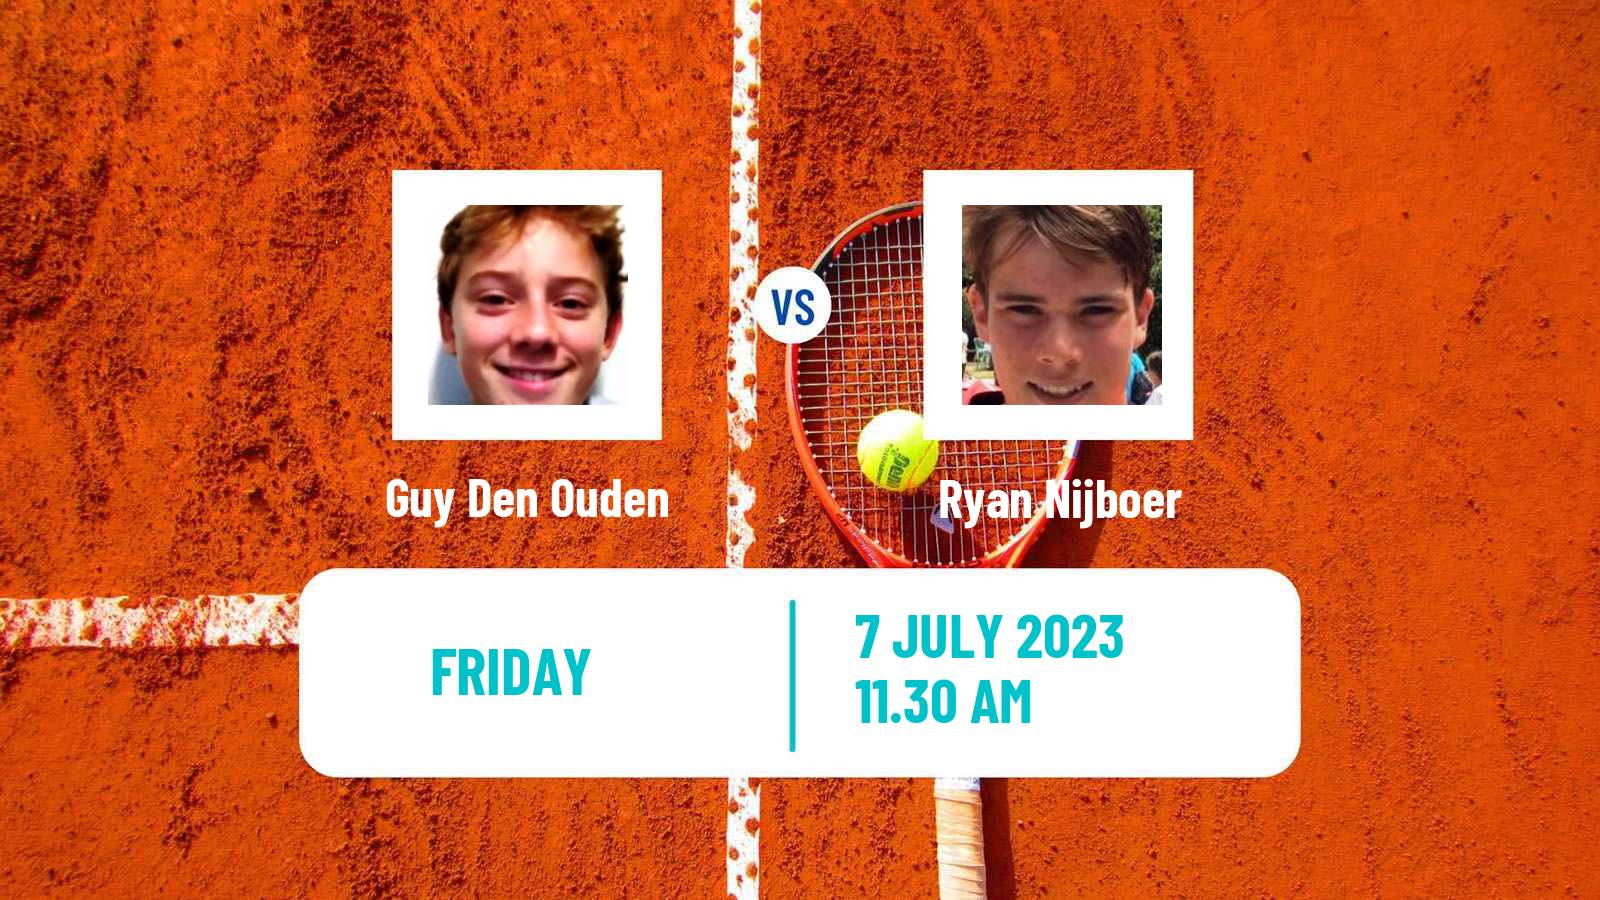 Tennis ITF M25 The Hague Men Guy Den Ouden - Ryan Nijboer